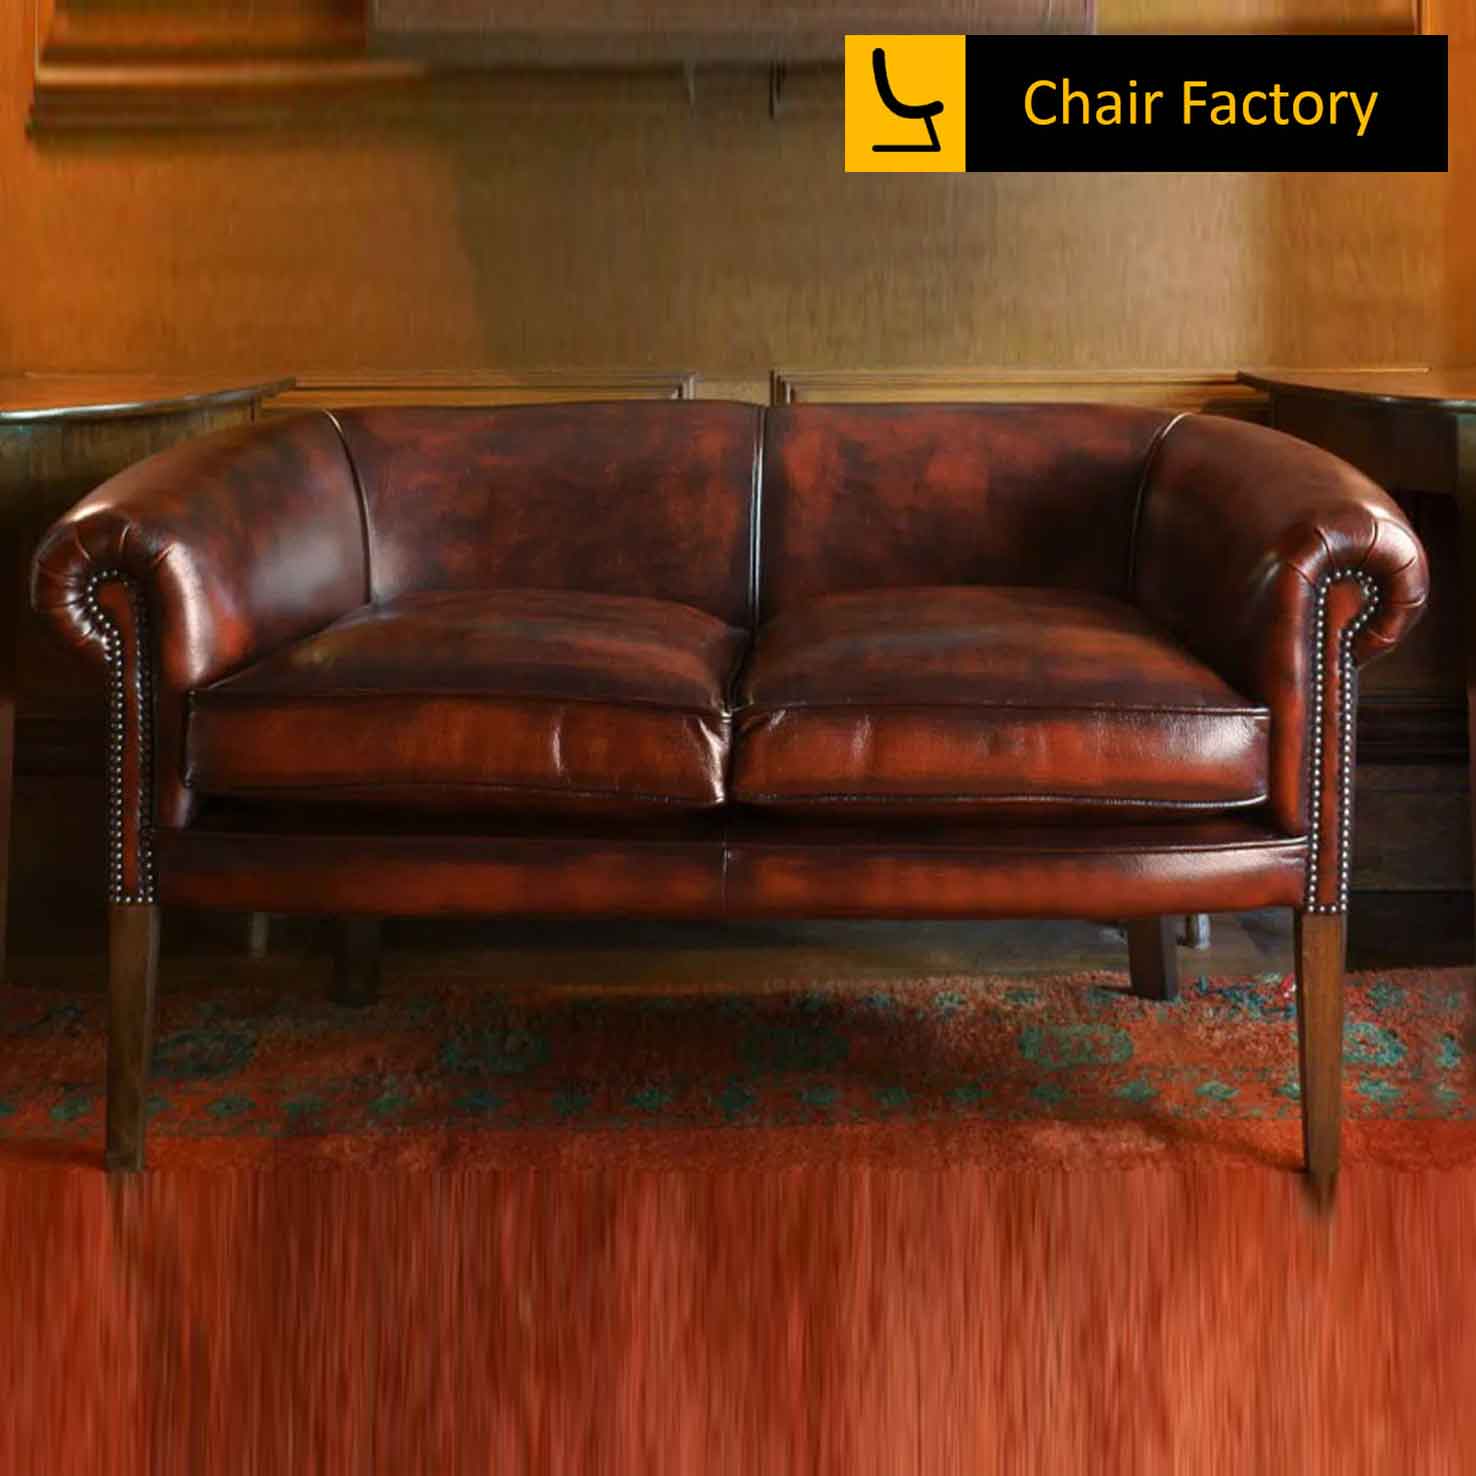 Dalmayr Genuine Leather Sofa